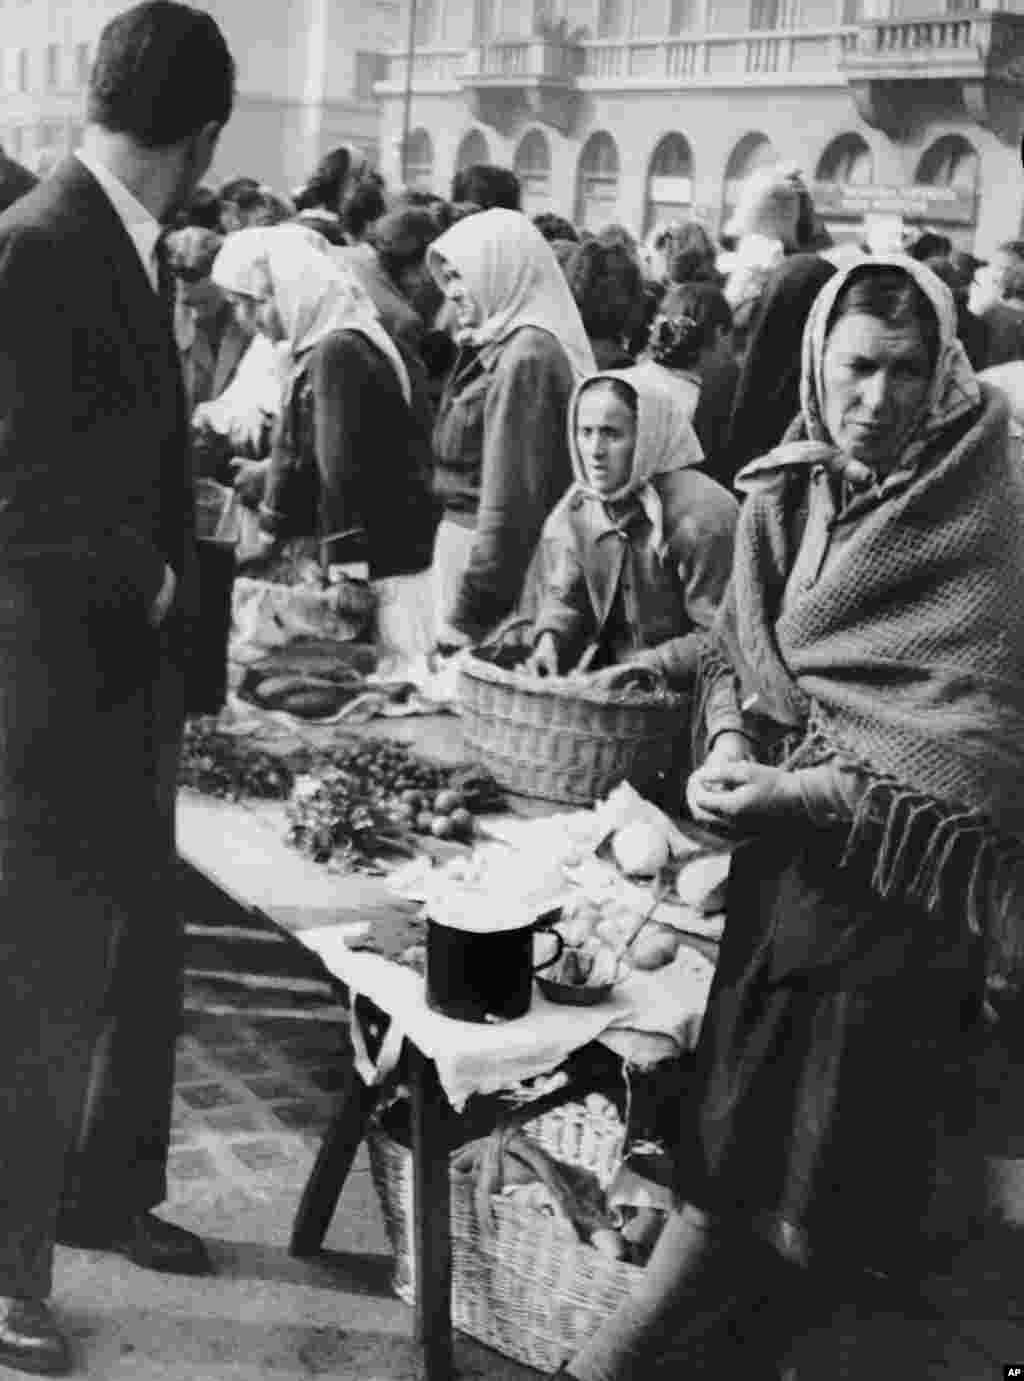 Белградский рынок в 1950 году, когда напряженность в отношениях с Советским Союзом привела к торговой блокаде, нехватке продовольствия и опасениям военного вторжения. В то время Тито проводил безжалостные репрессии против тех, кто сочувствовал Советскому Союзу. Сотни людей были убиты в ходе политических репрессий, а тысячи отправлены в исправительно-трудовые лагеря.